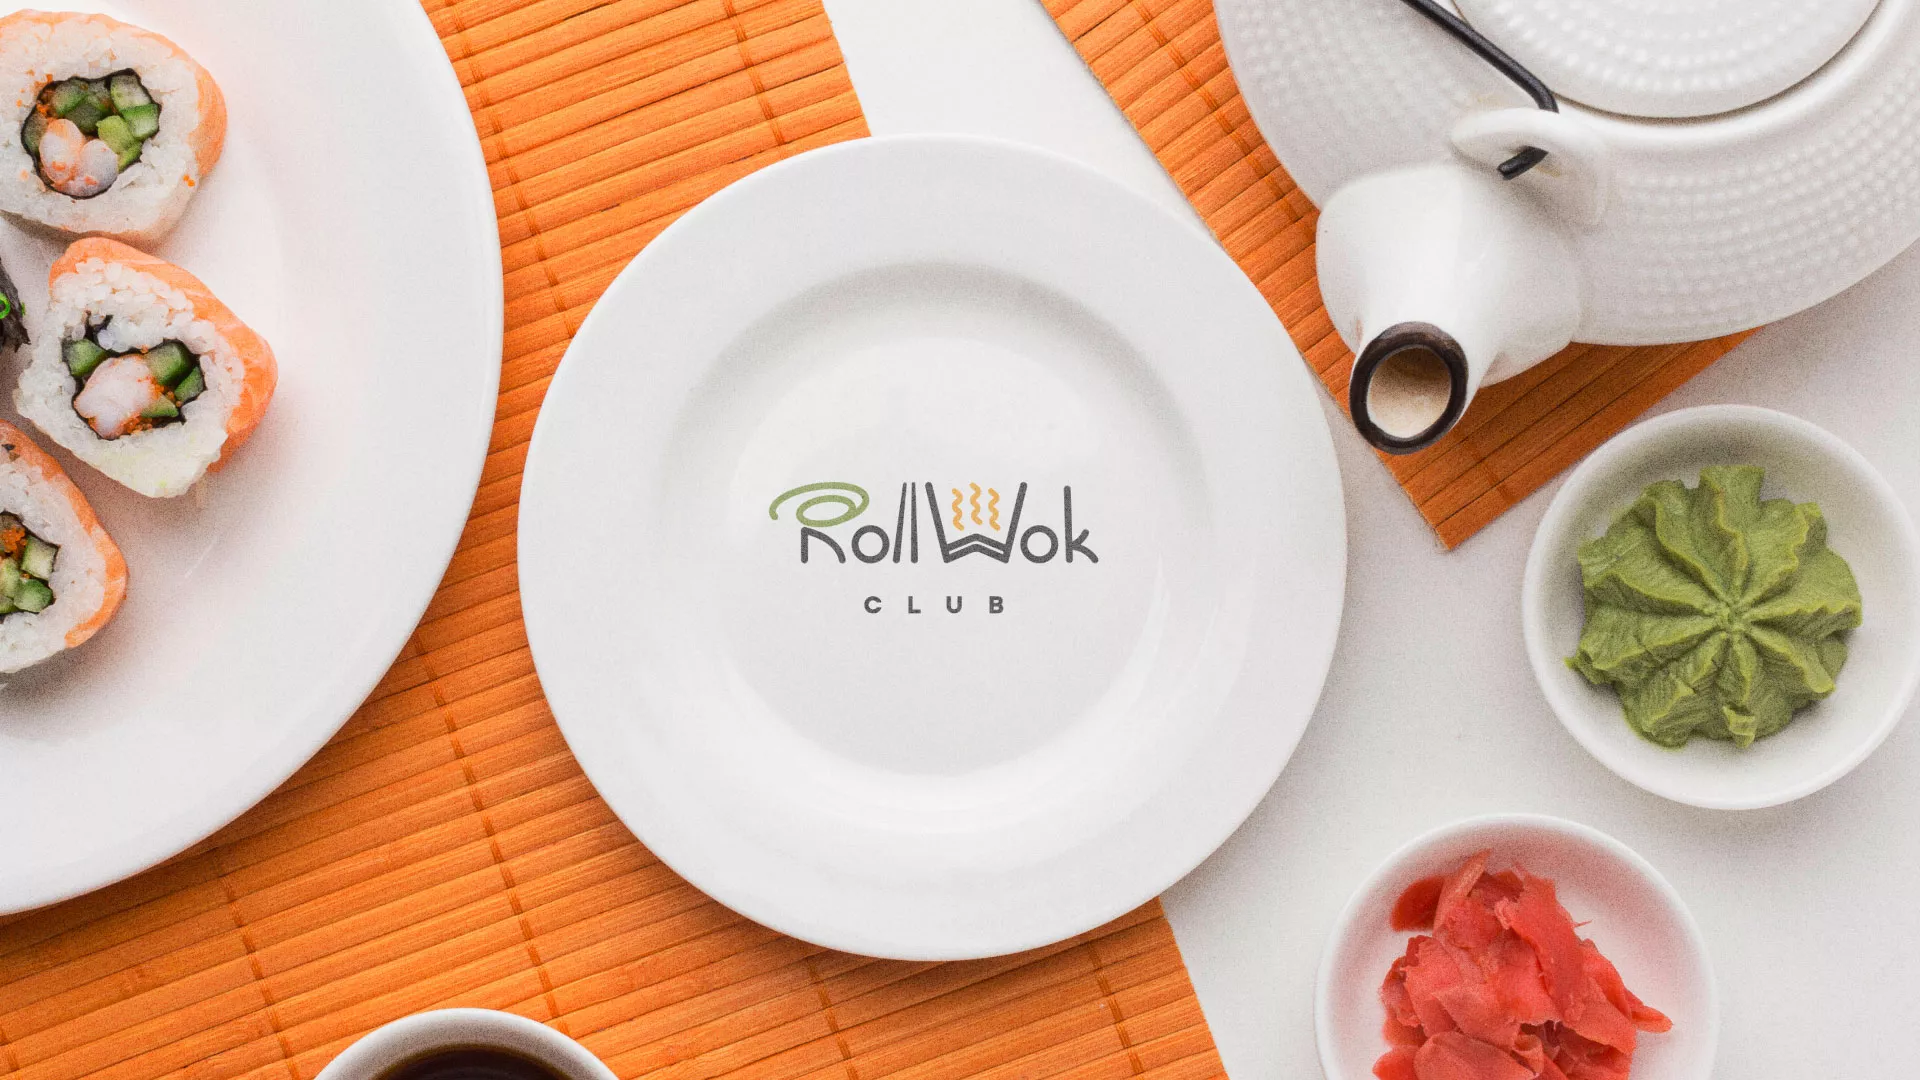 Разработка логотипа и фирменного стиля суши-бара «Roll Wok Club» в Городищах